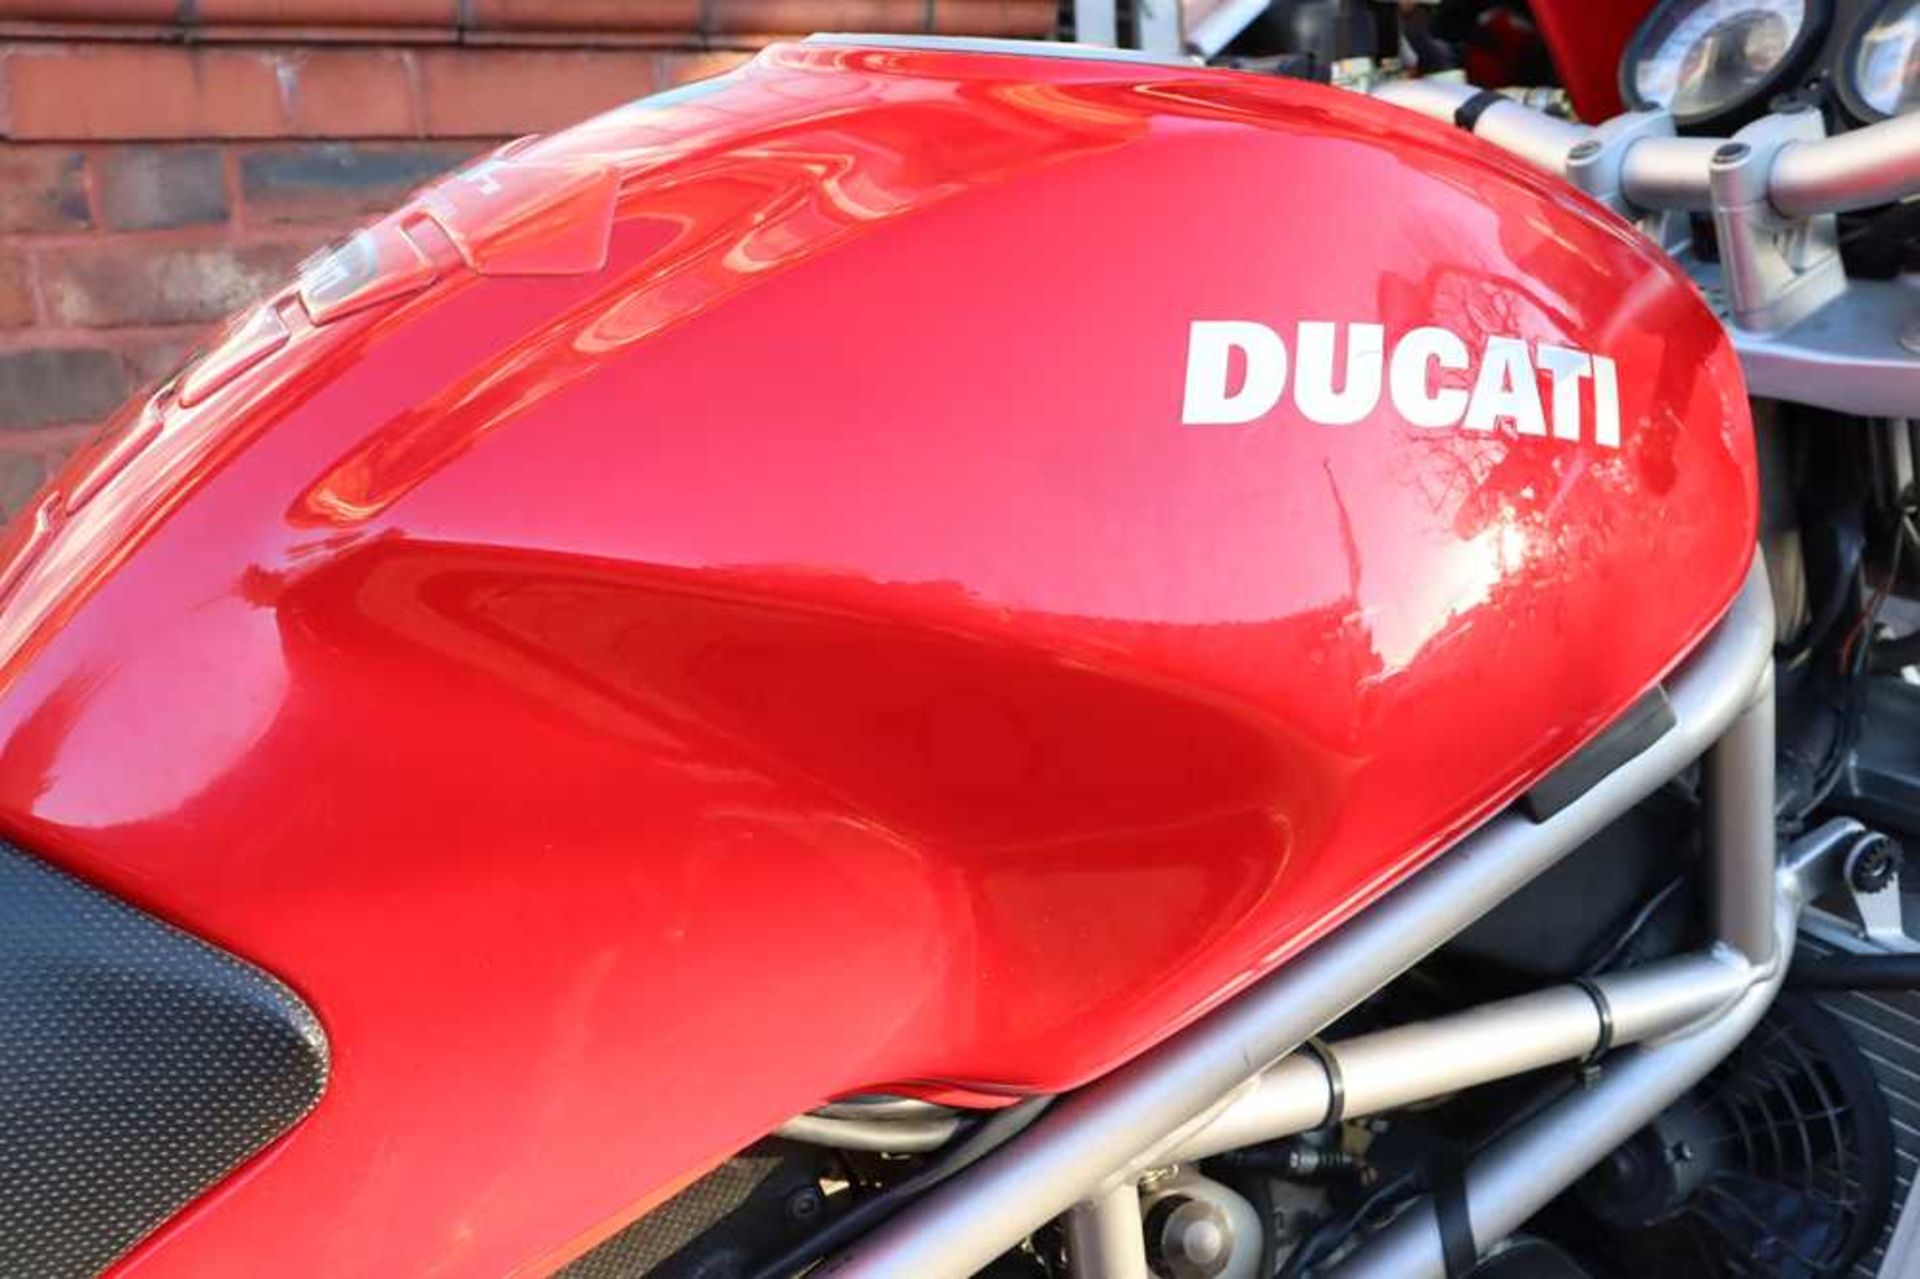 2003 Ducati Monster S4R 996 Desmoquattro Superbike engine - Image 9 of 54